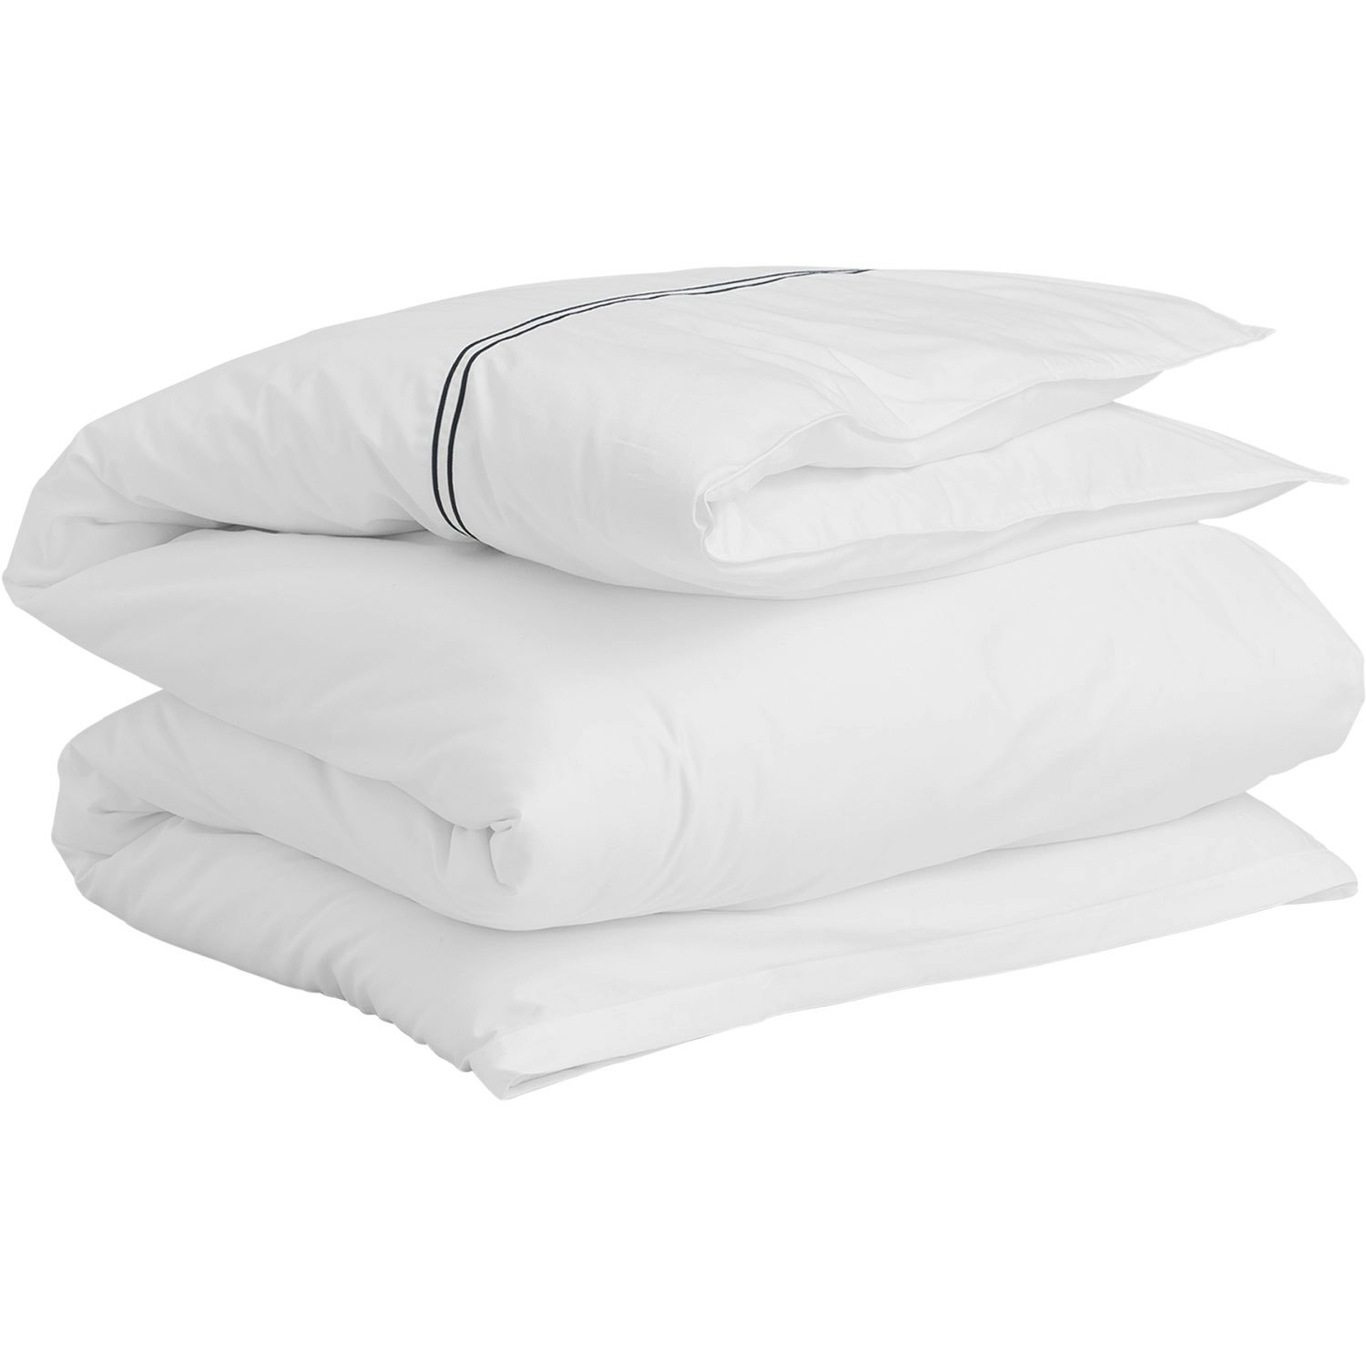 Sateen Stitch Bettbezug Weiß, 220x220 cm